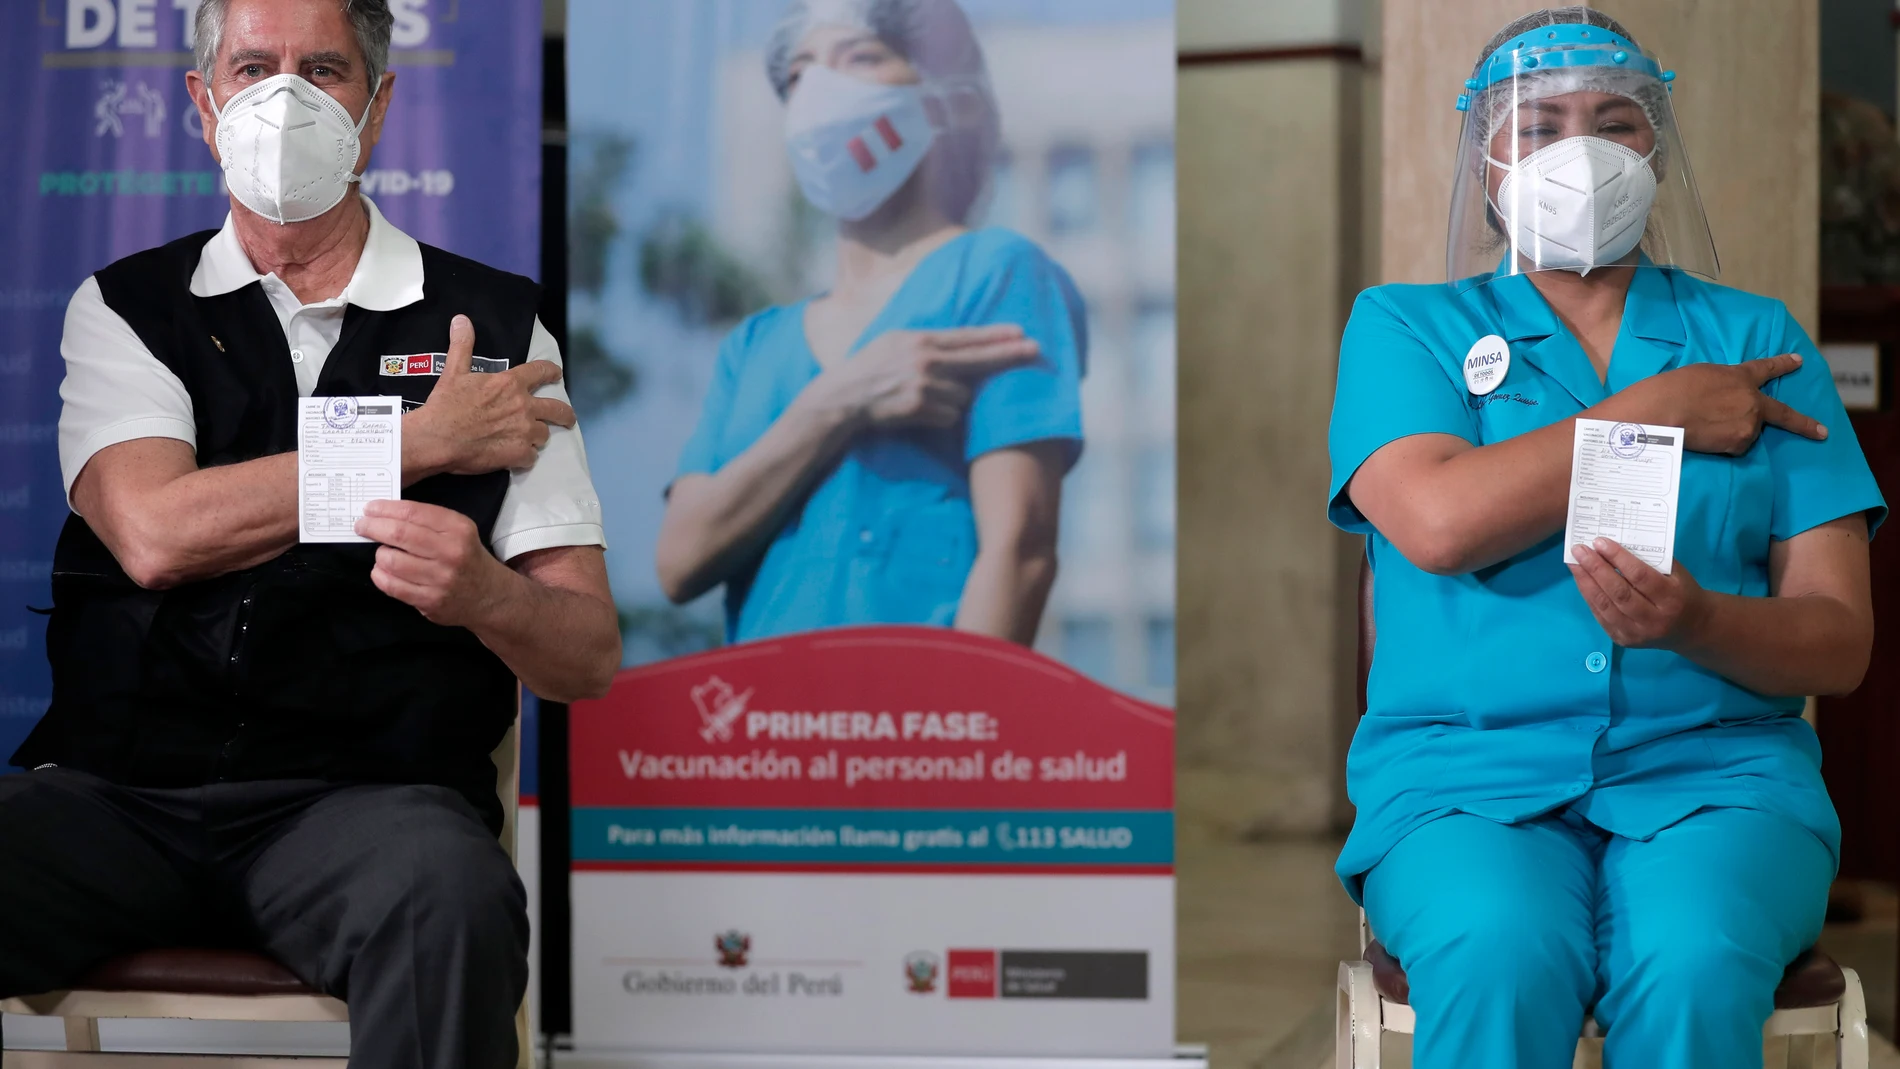 El presidente de Perú, Francisco Sagasti, y una enfermera muestran los documentos que certifican su vacunación